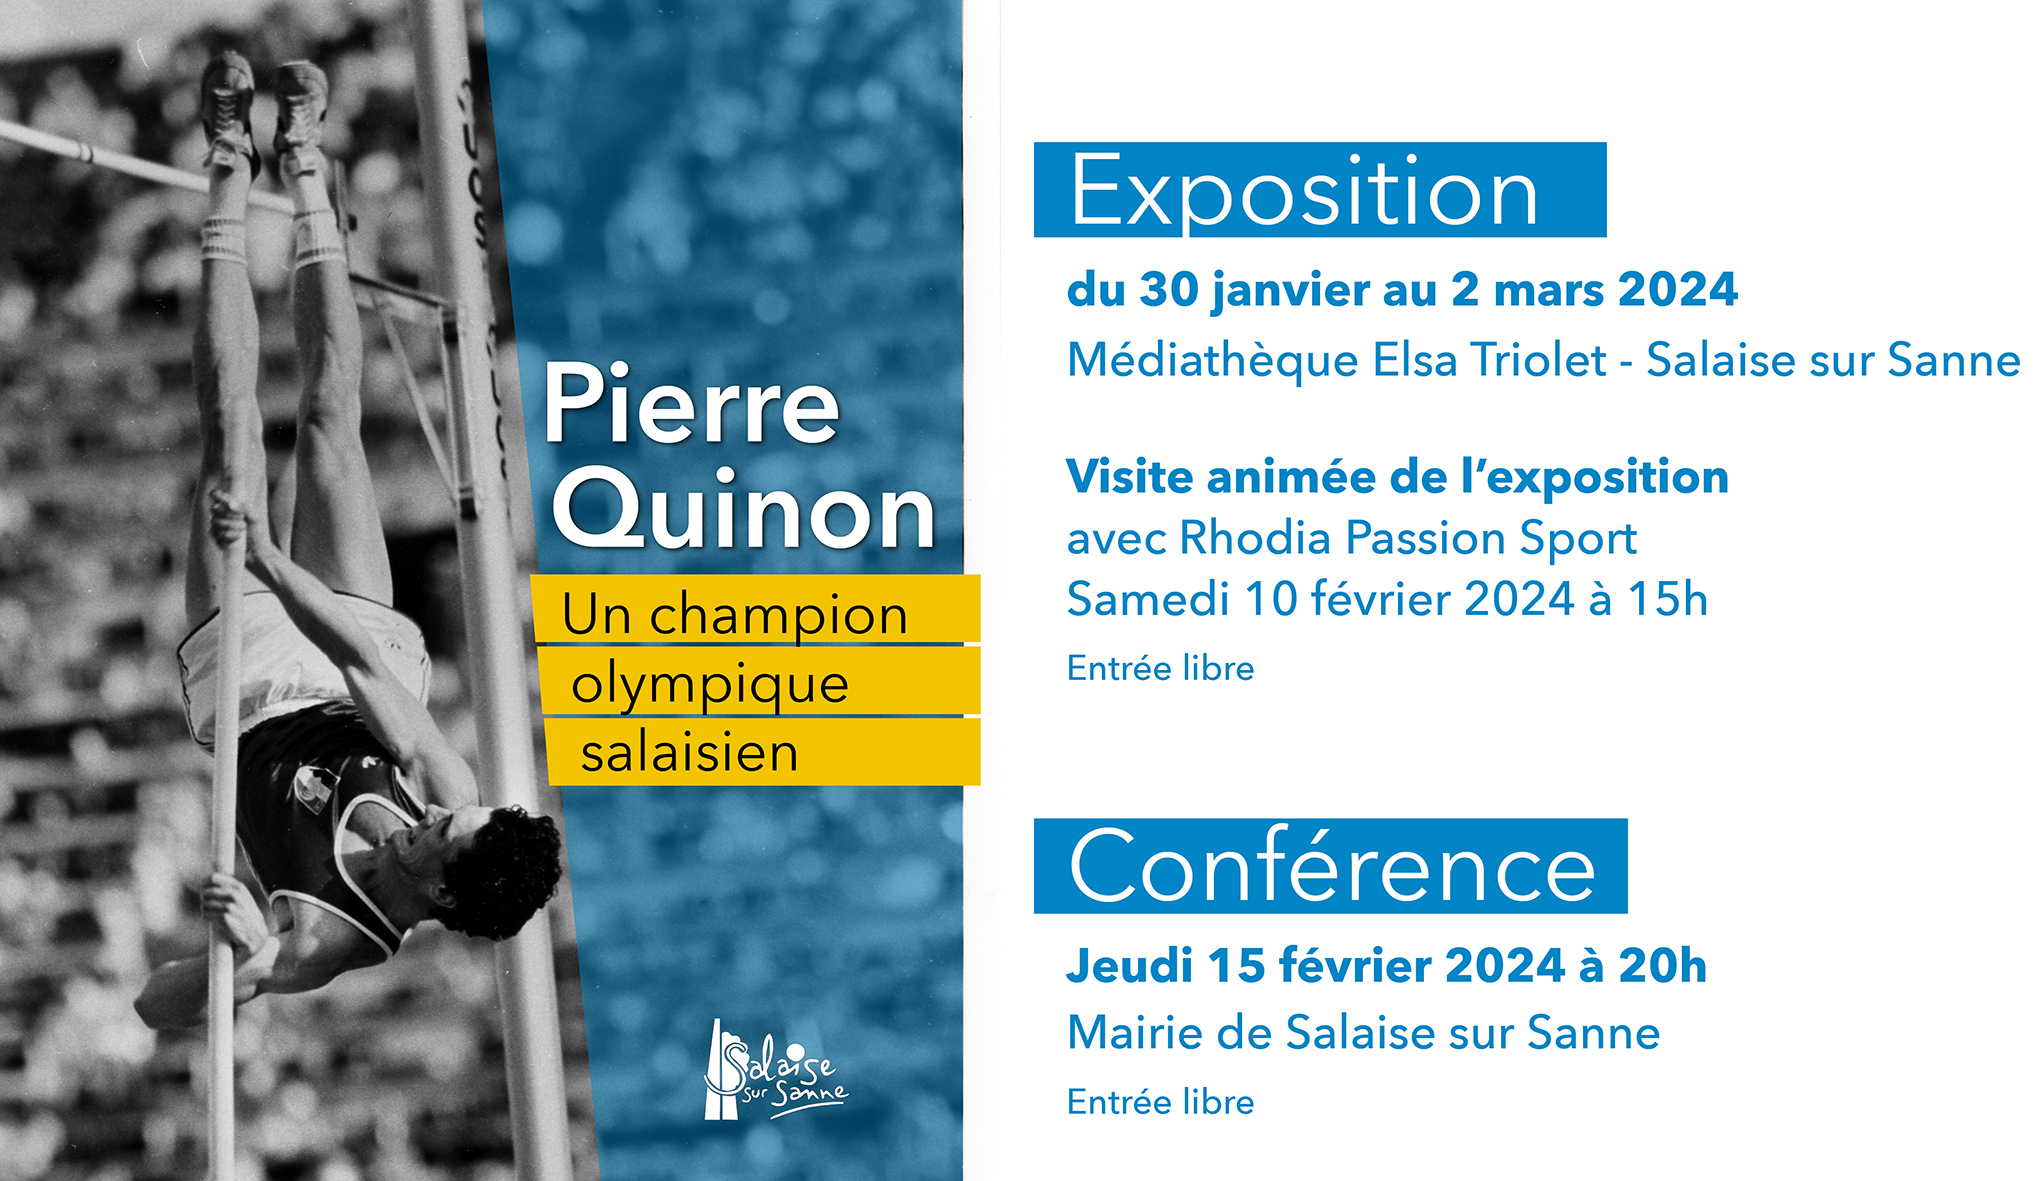 Exposition Pierre Quinon, un champion olympique salaisien